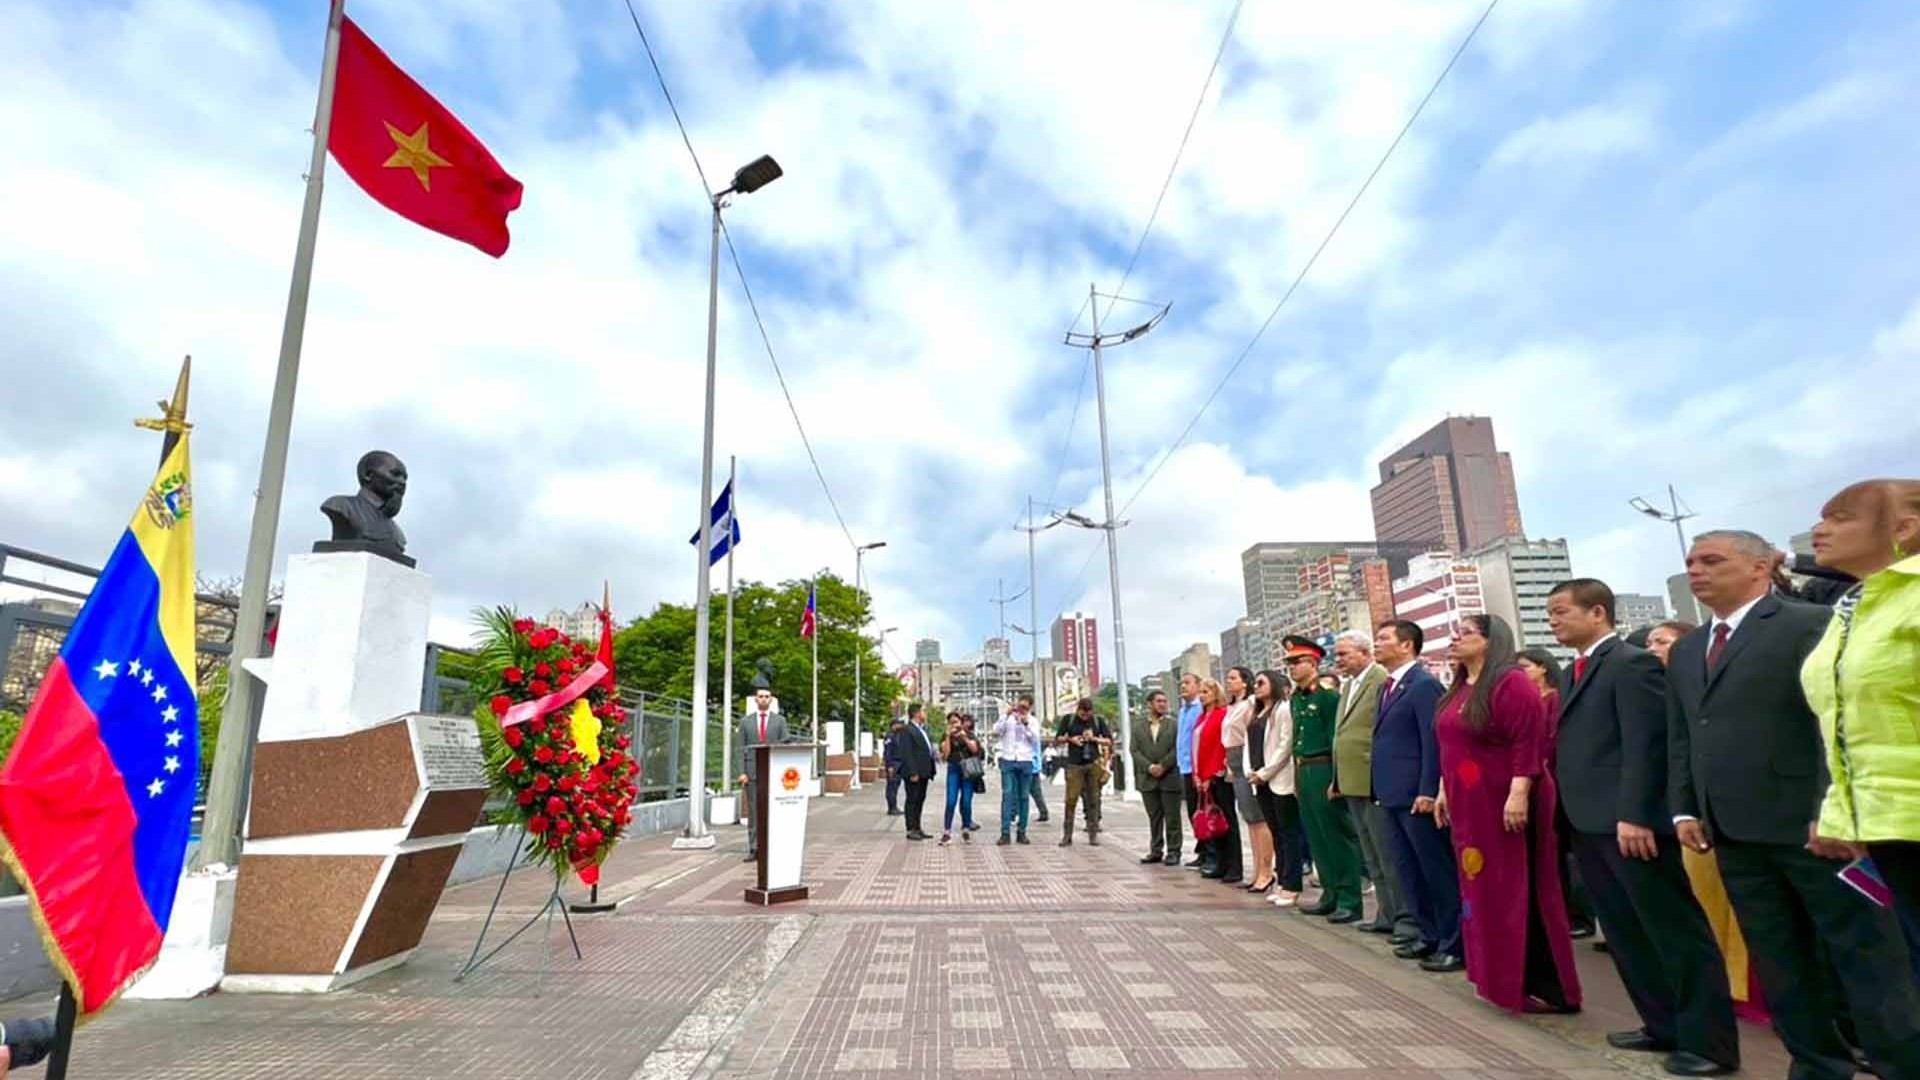 Dâng hoa kỷ niệm 133 năm Ngày sinh Chủ tịch Hồ Chí Minh tại Venezuela